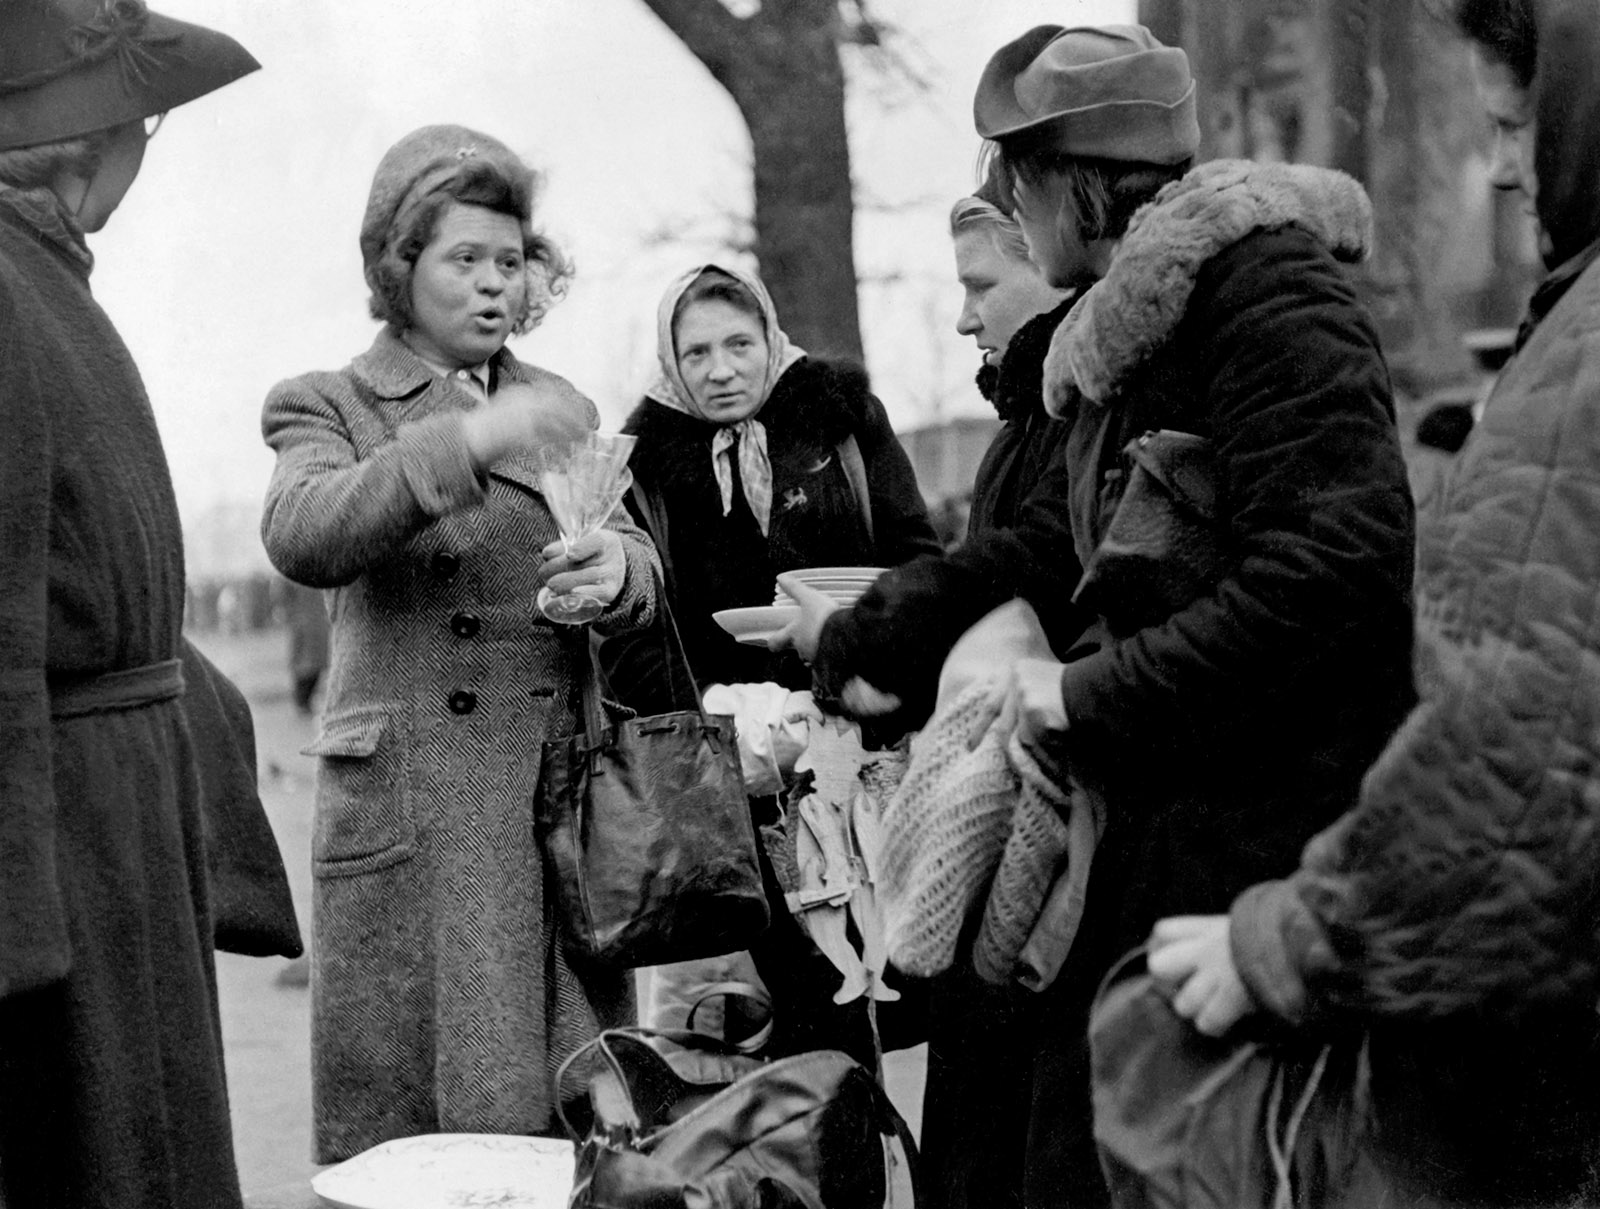 Women at the black market in the Tiergarten, Berlin, 1947